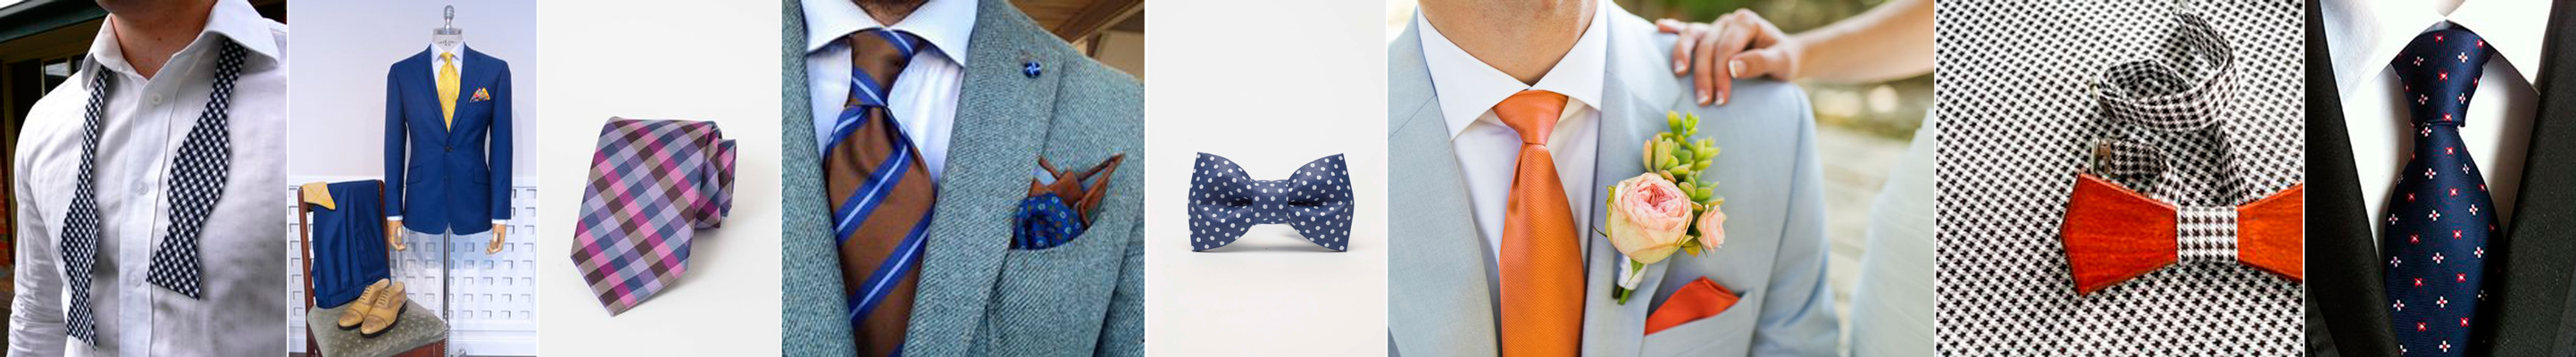 trendy ślubne 2016 - kolorowe dodatki w stroju Pana Młodego - muszka, krawat, poszetka